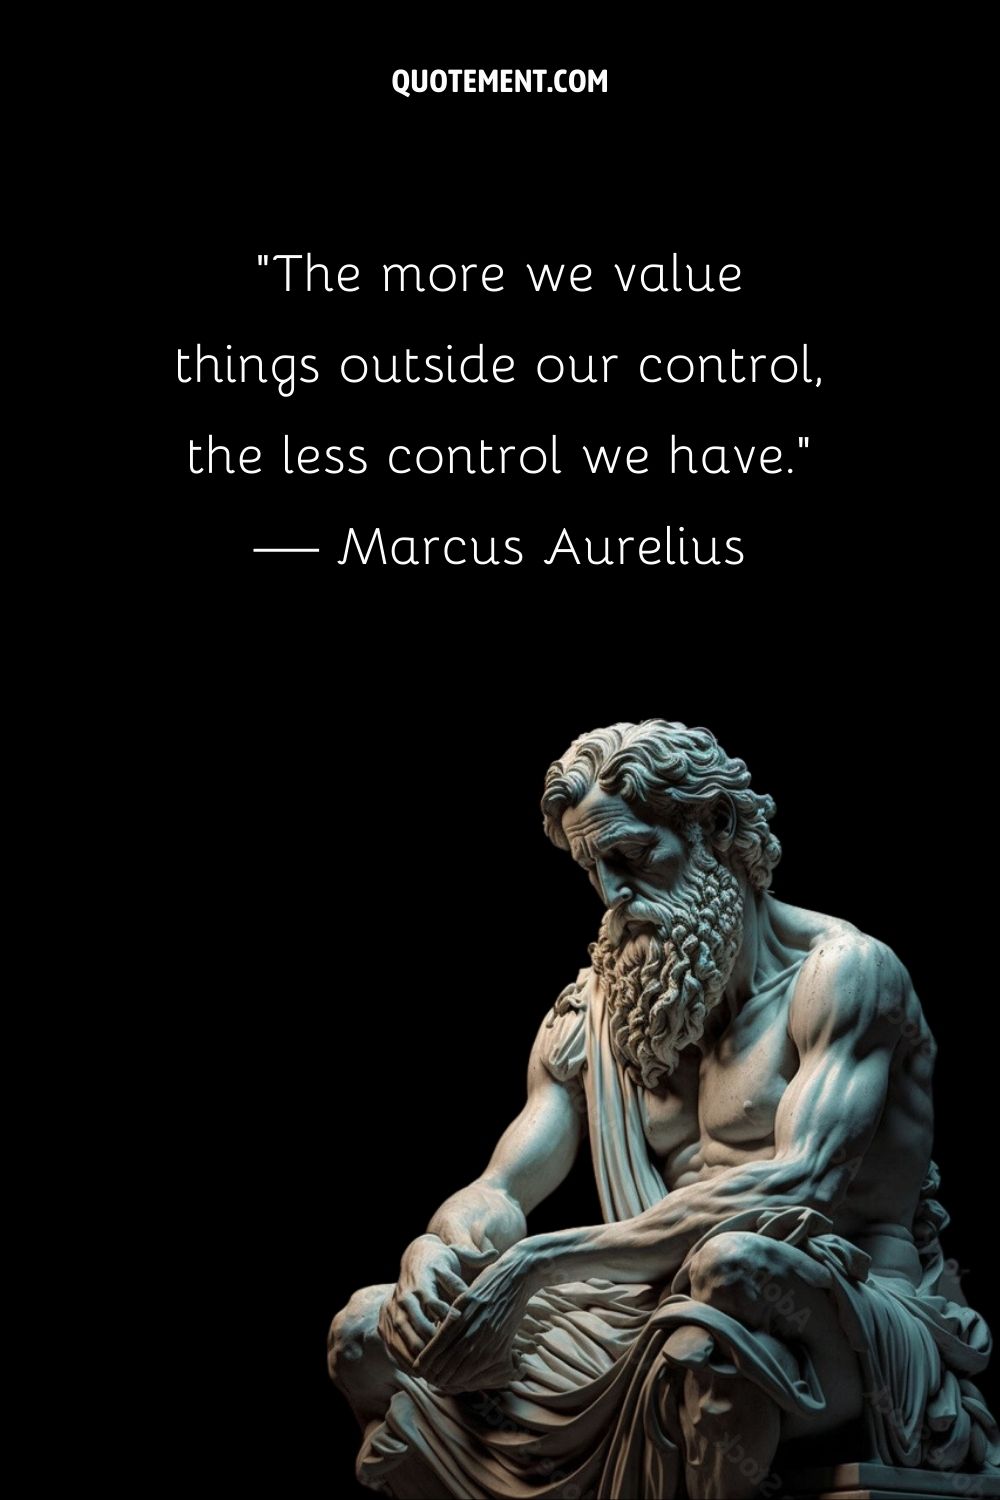 Carved wisdom of Marcus Aurelius